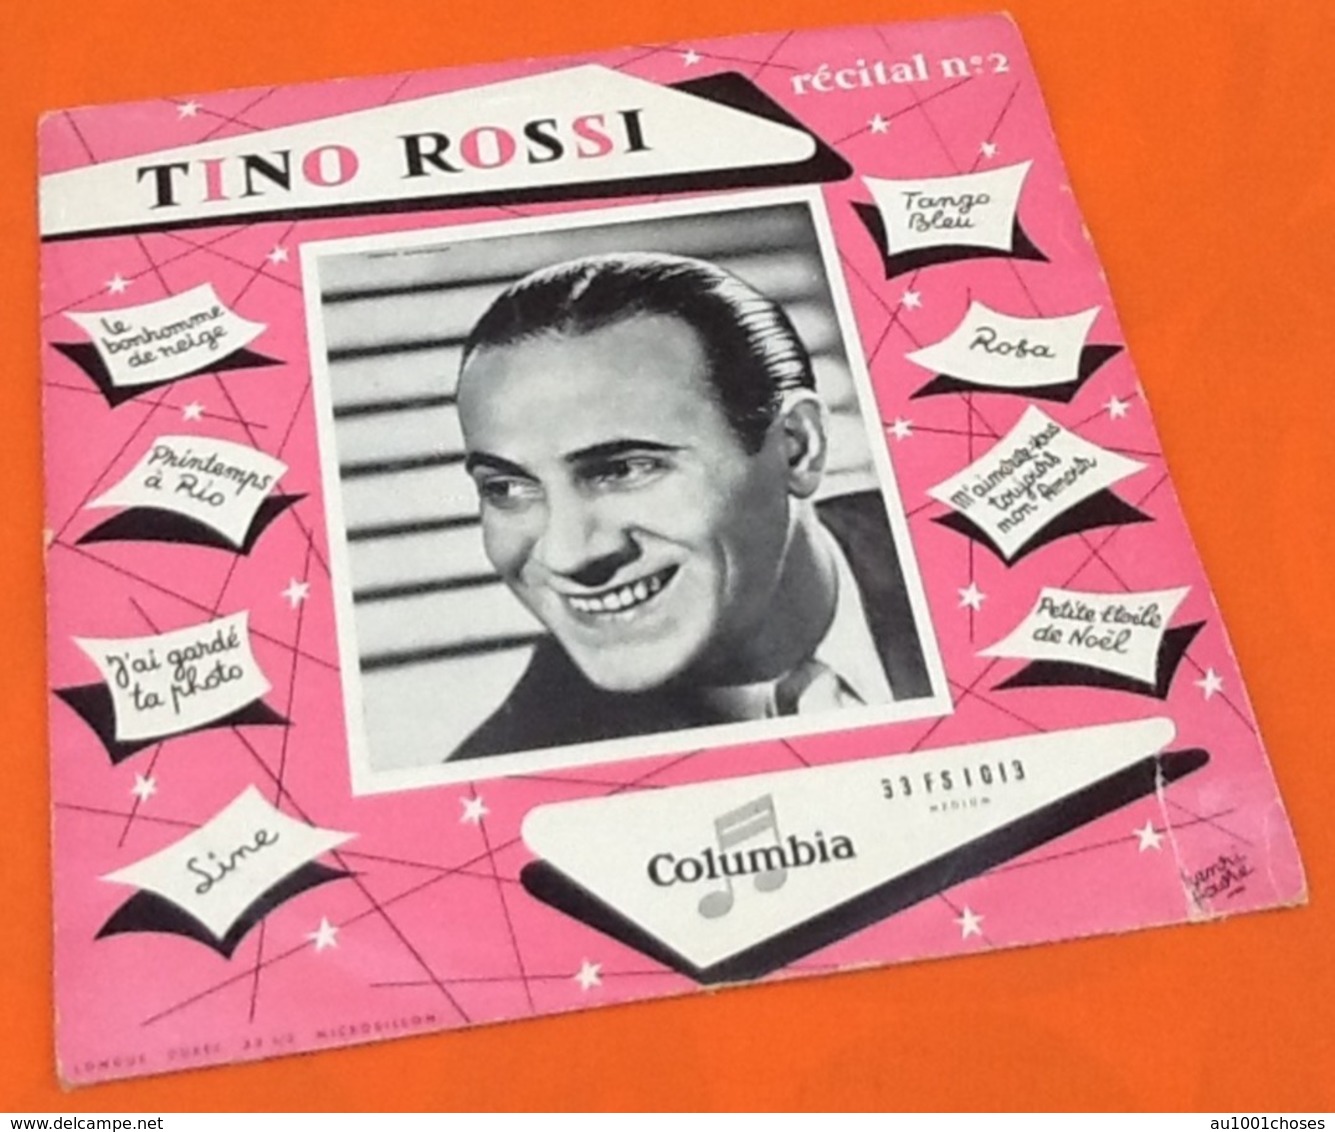 Album Vinyle 33 Tours (25cm) Tino Rossi Récital  N°2 (1954) Columbia 33 FS 1013 - Formats Spéciaux